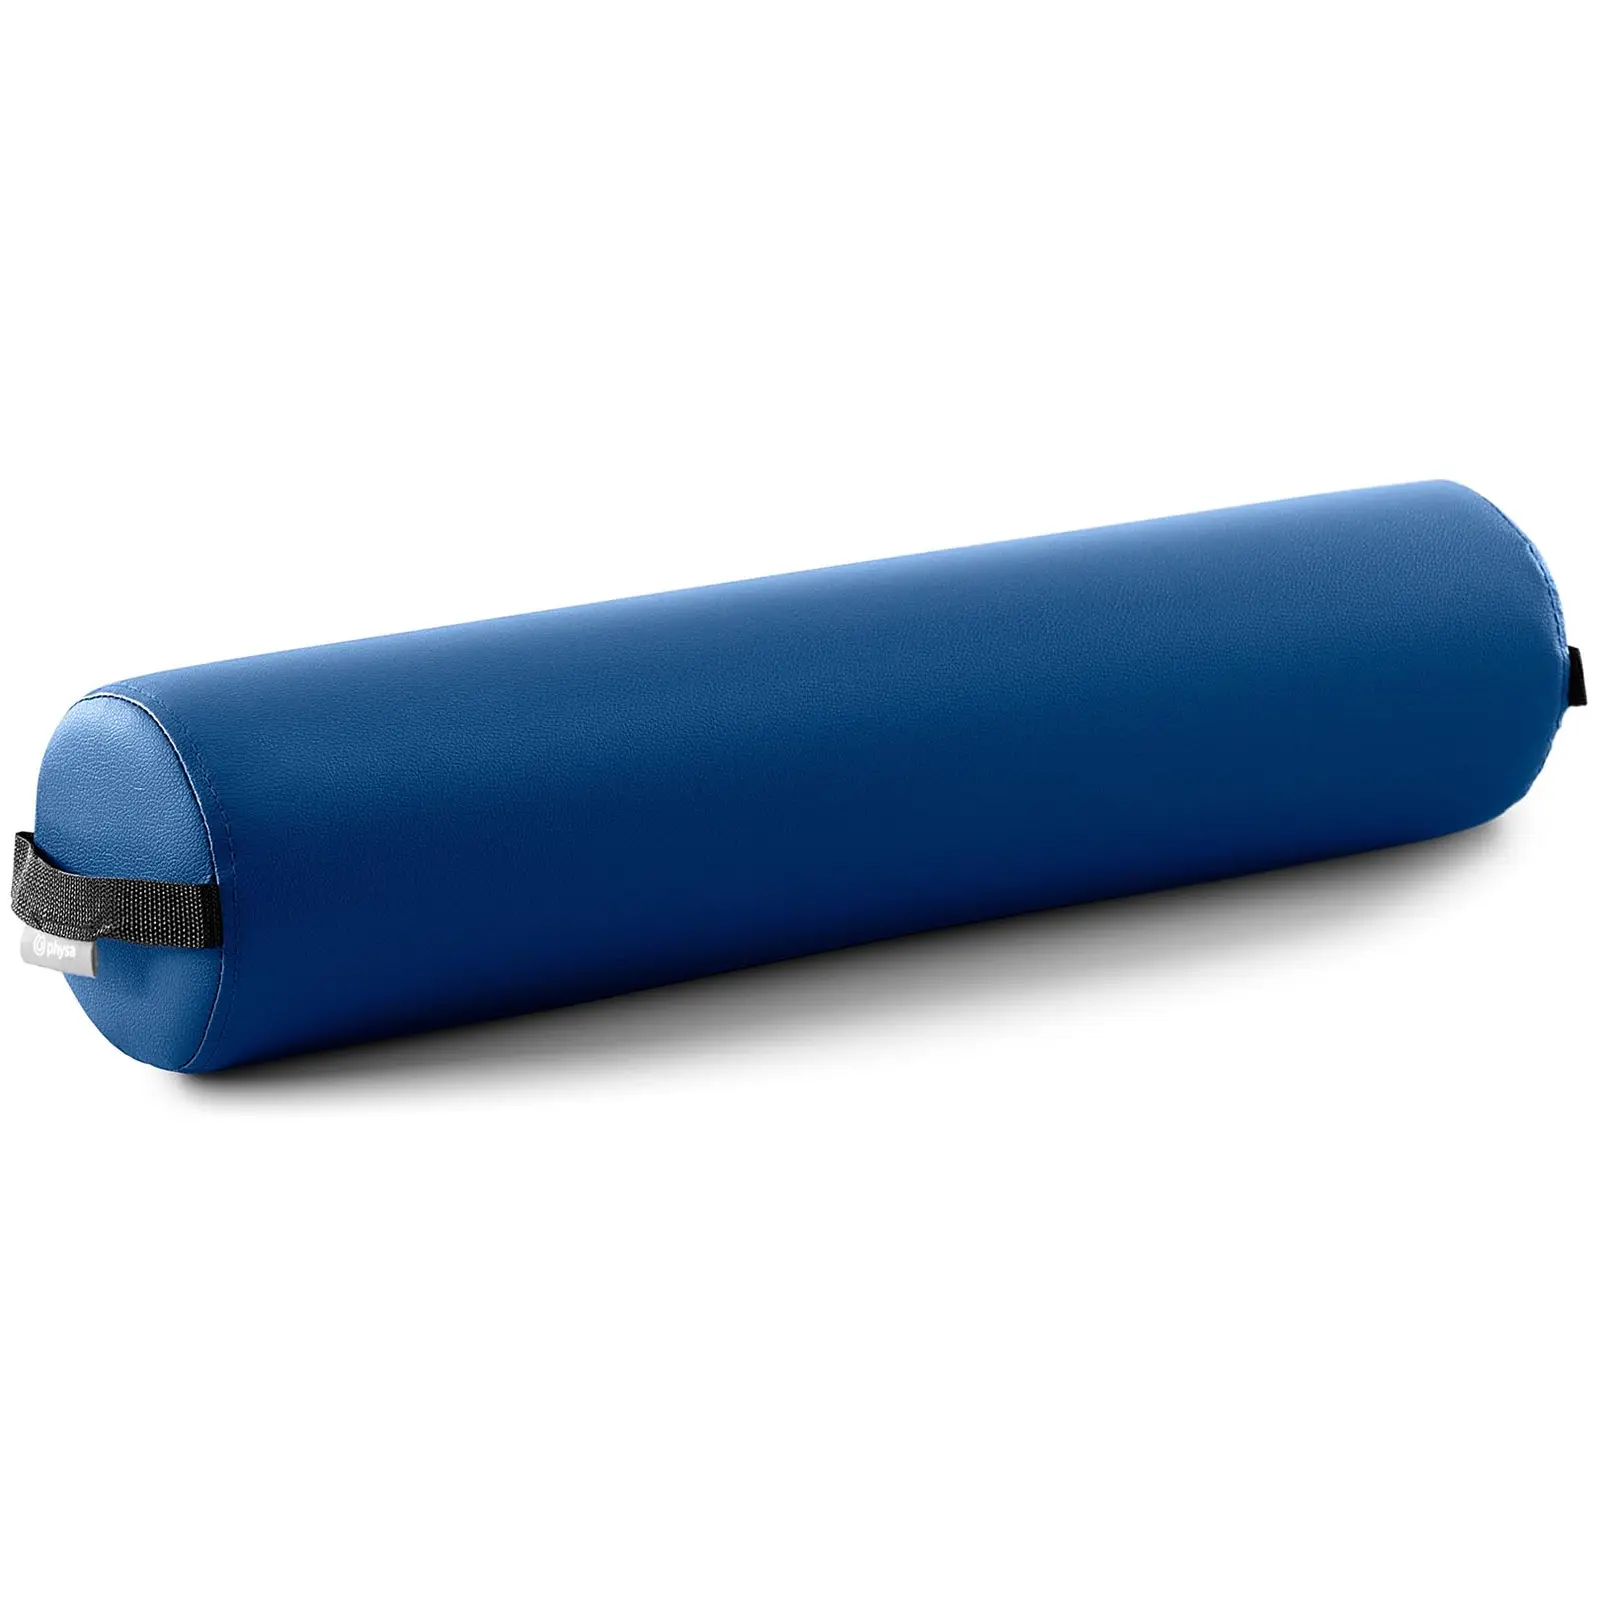 Rodillo masajeador - cilíndrico - azul